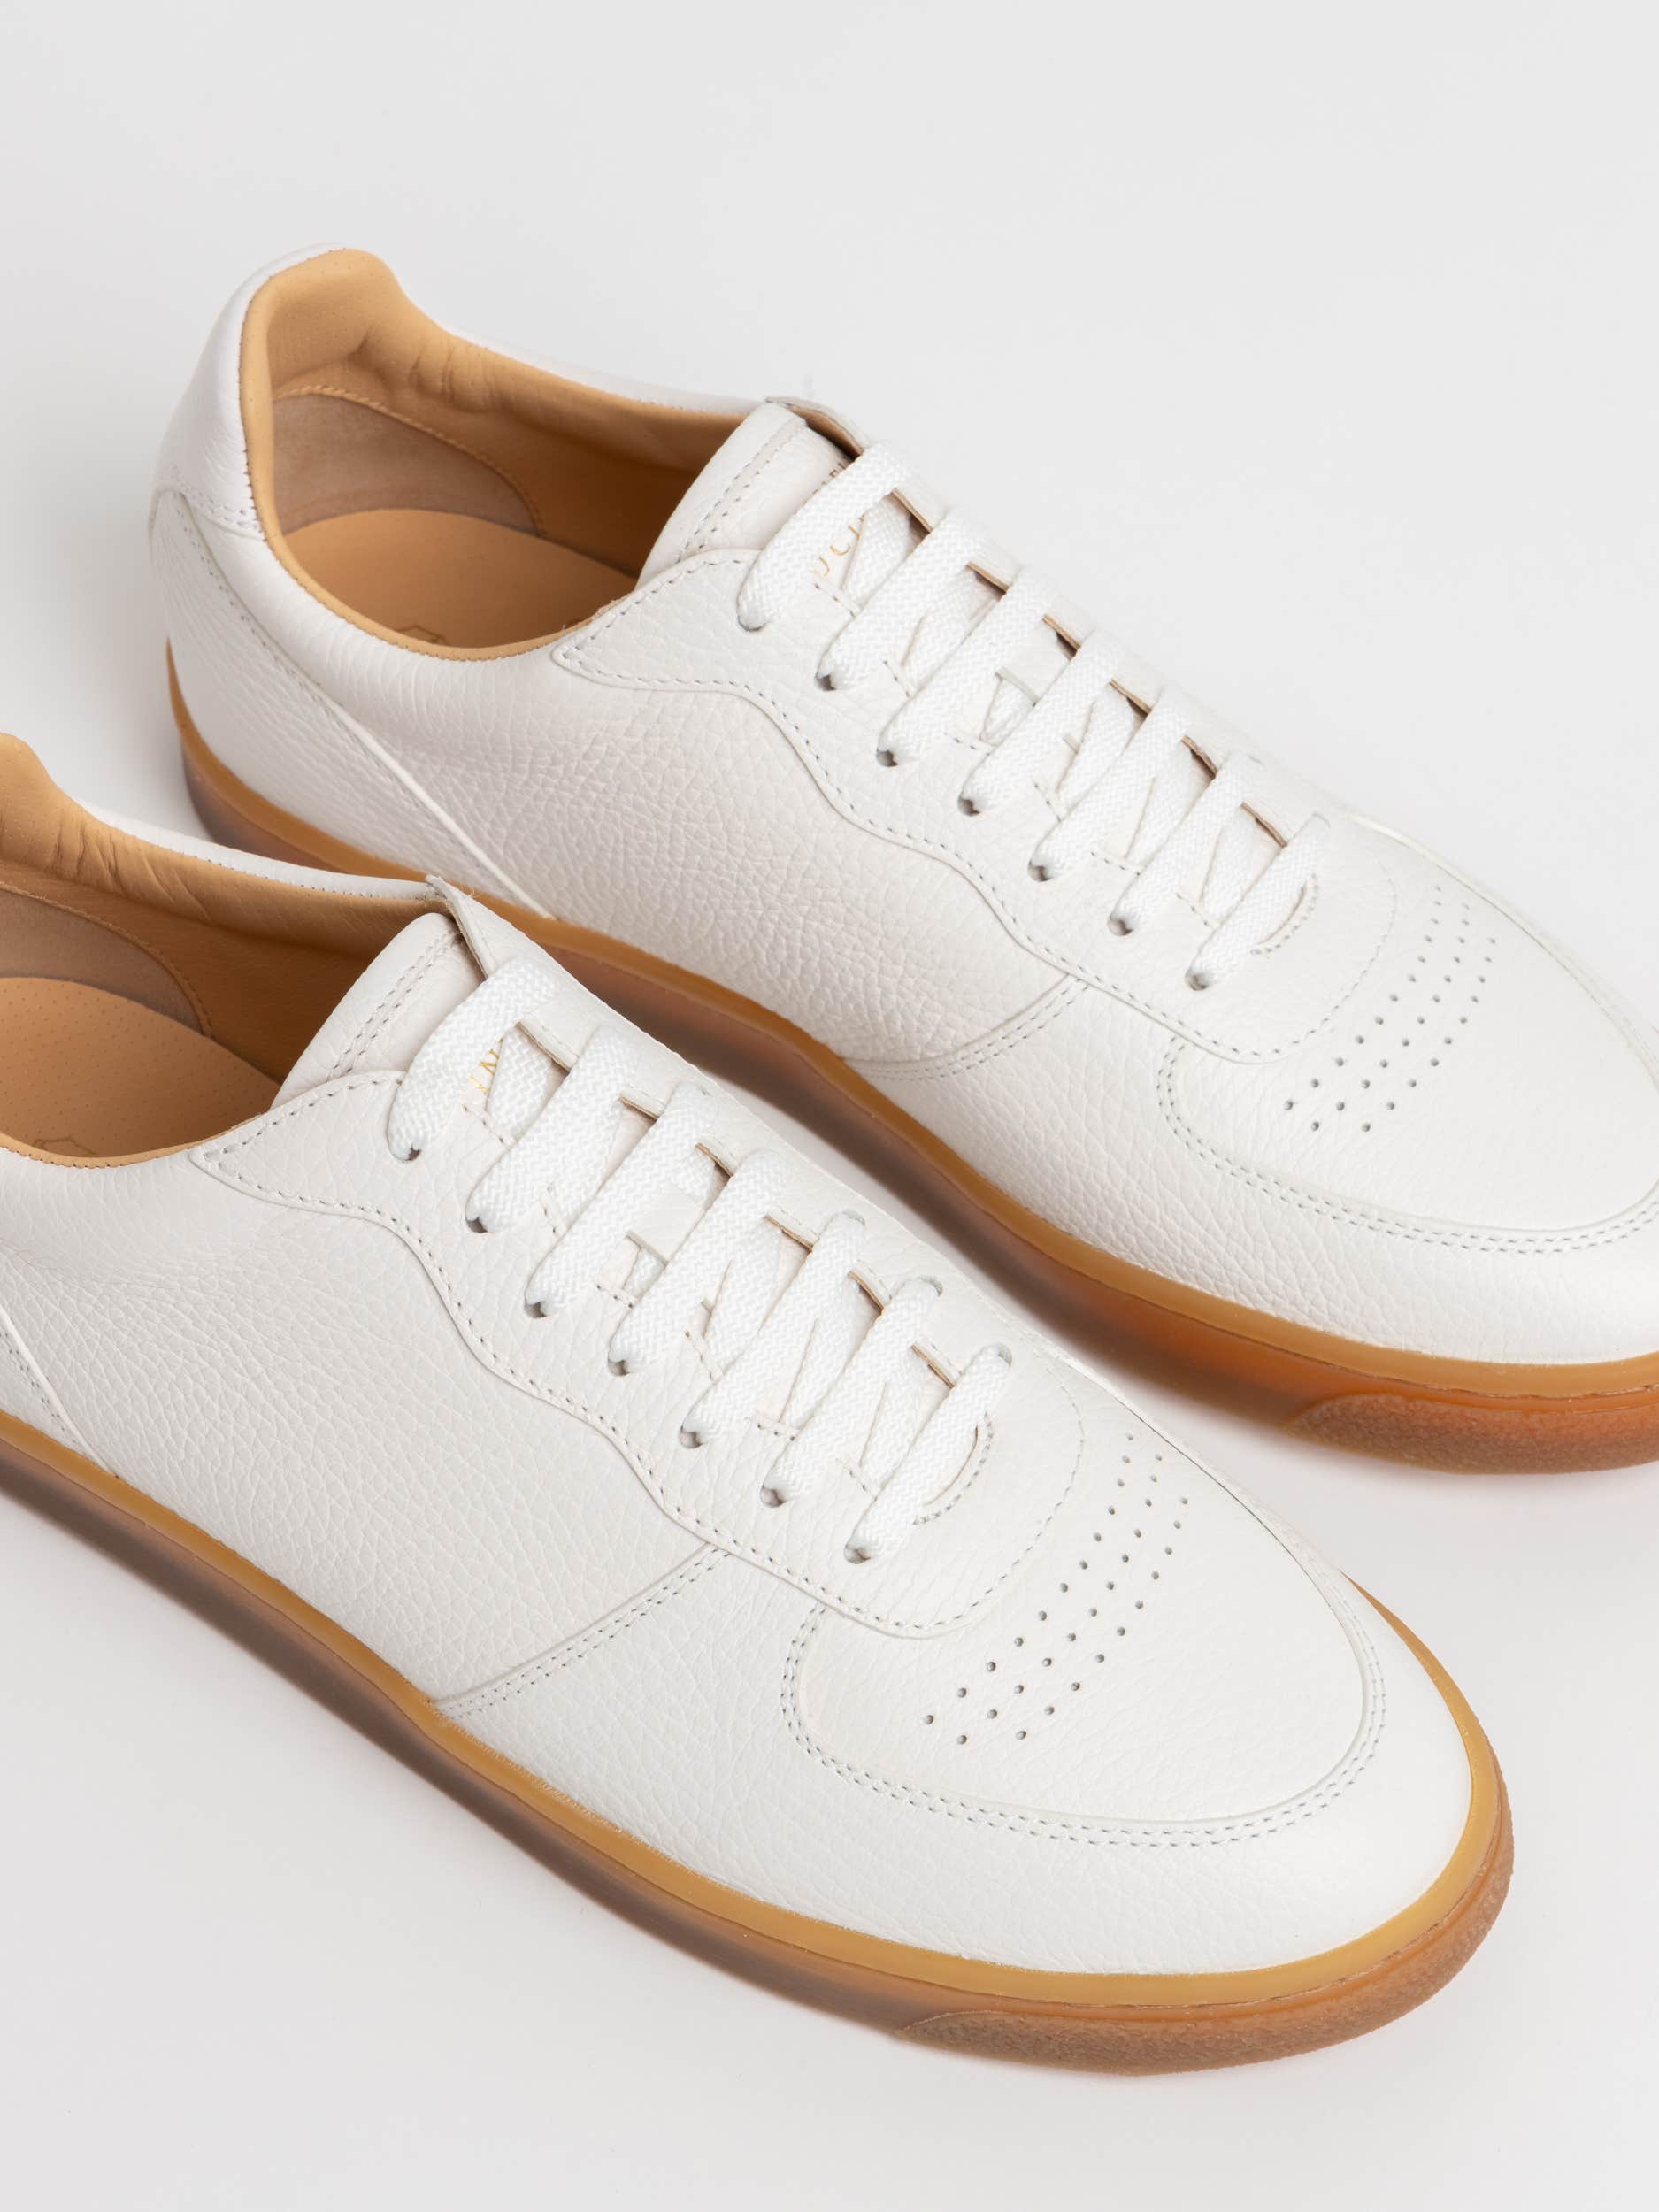 White/Tan Deerskin Sneakers